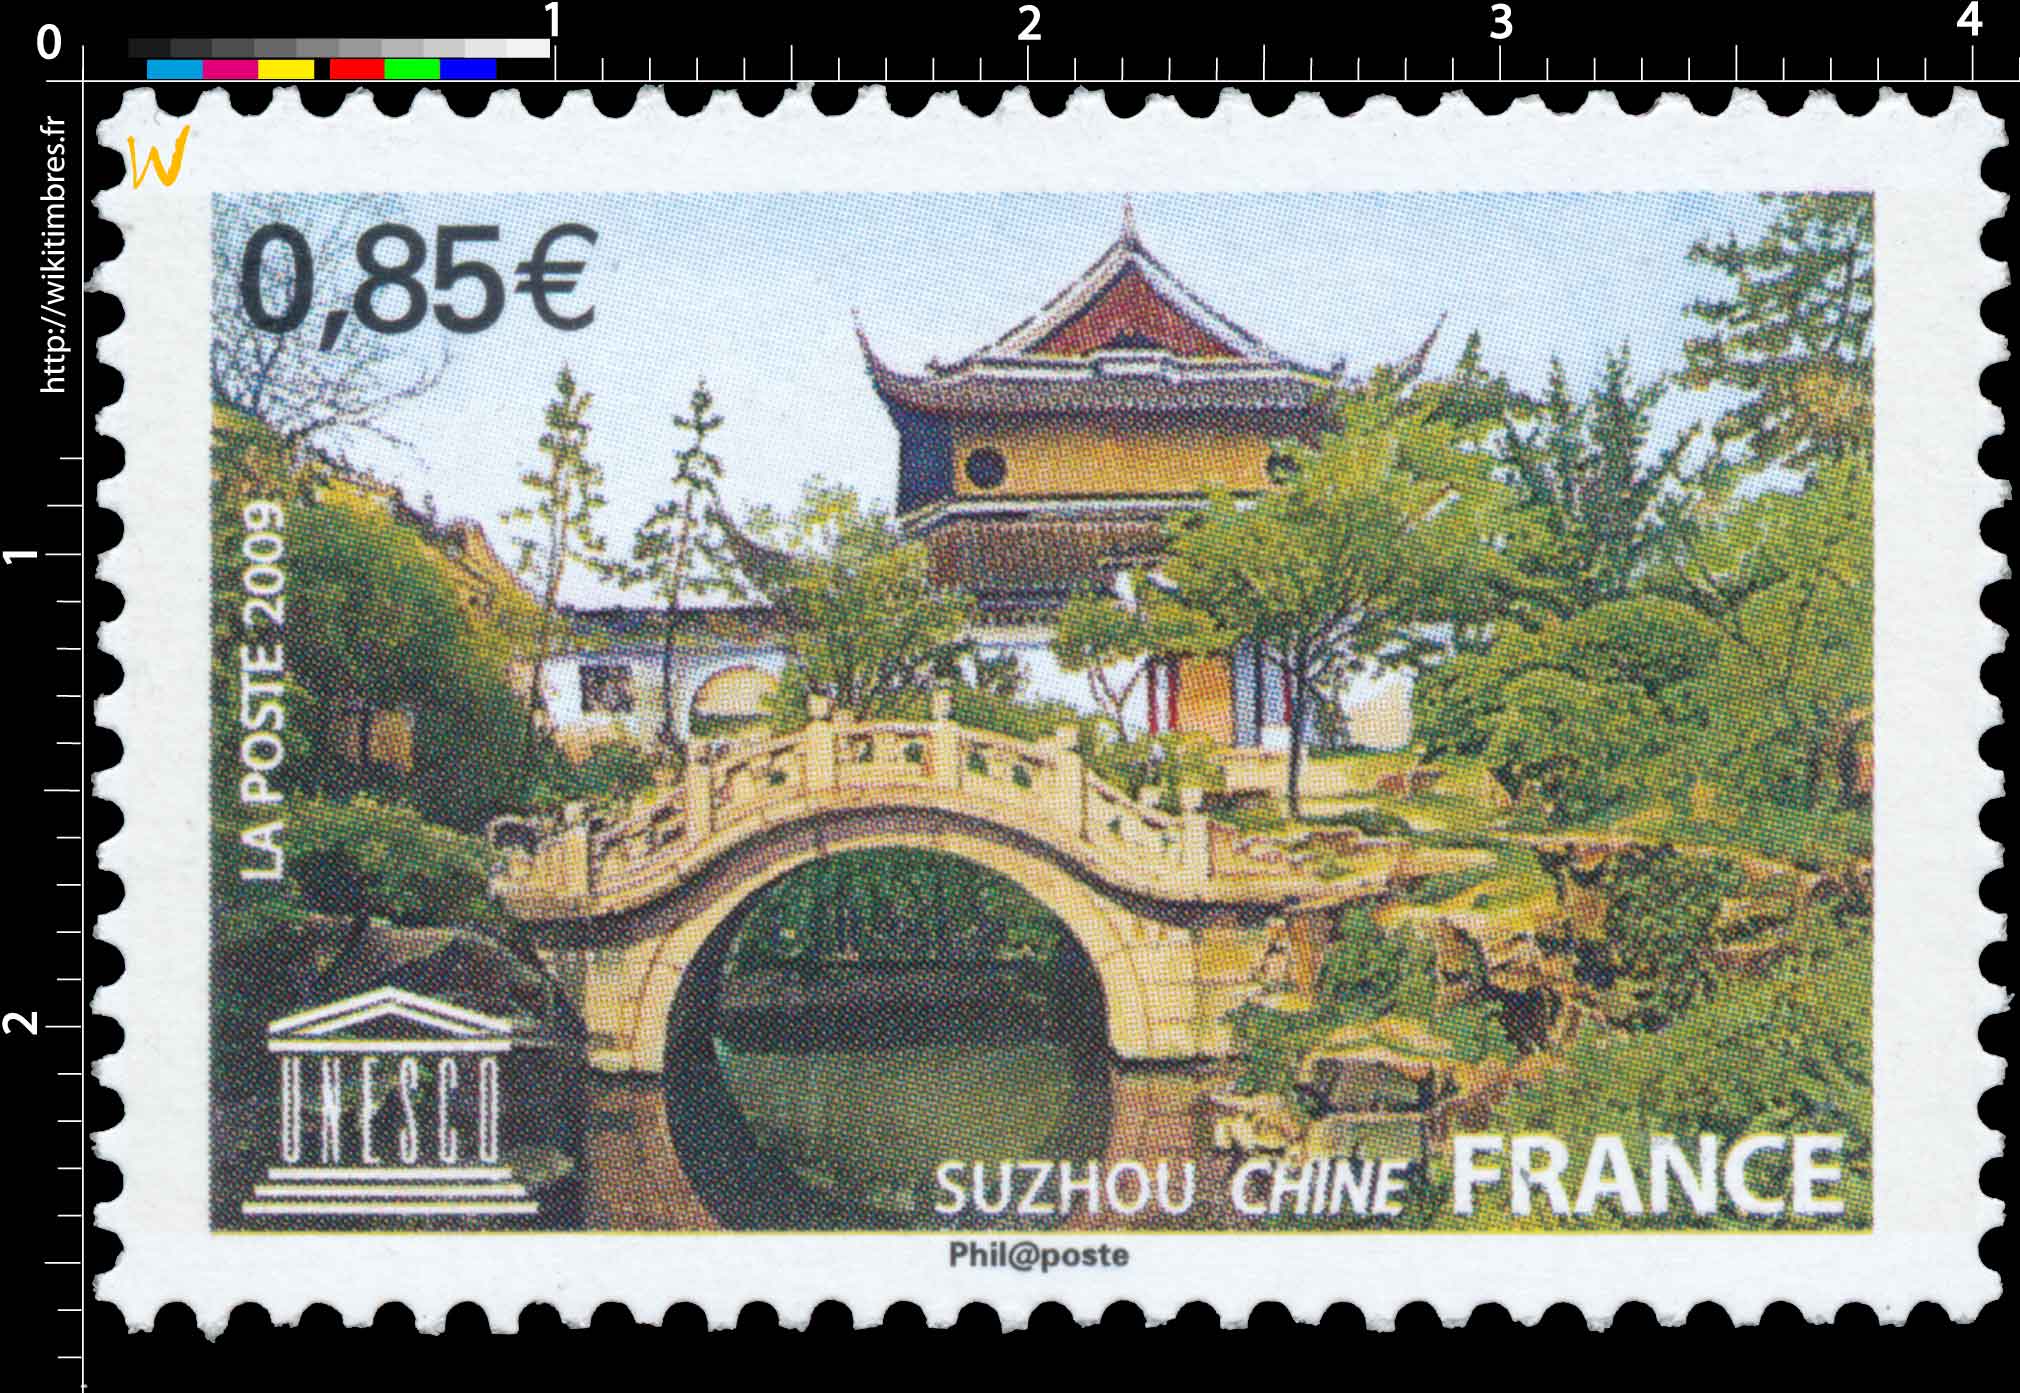 2009 UNESCO SUZHOU CHINE